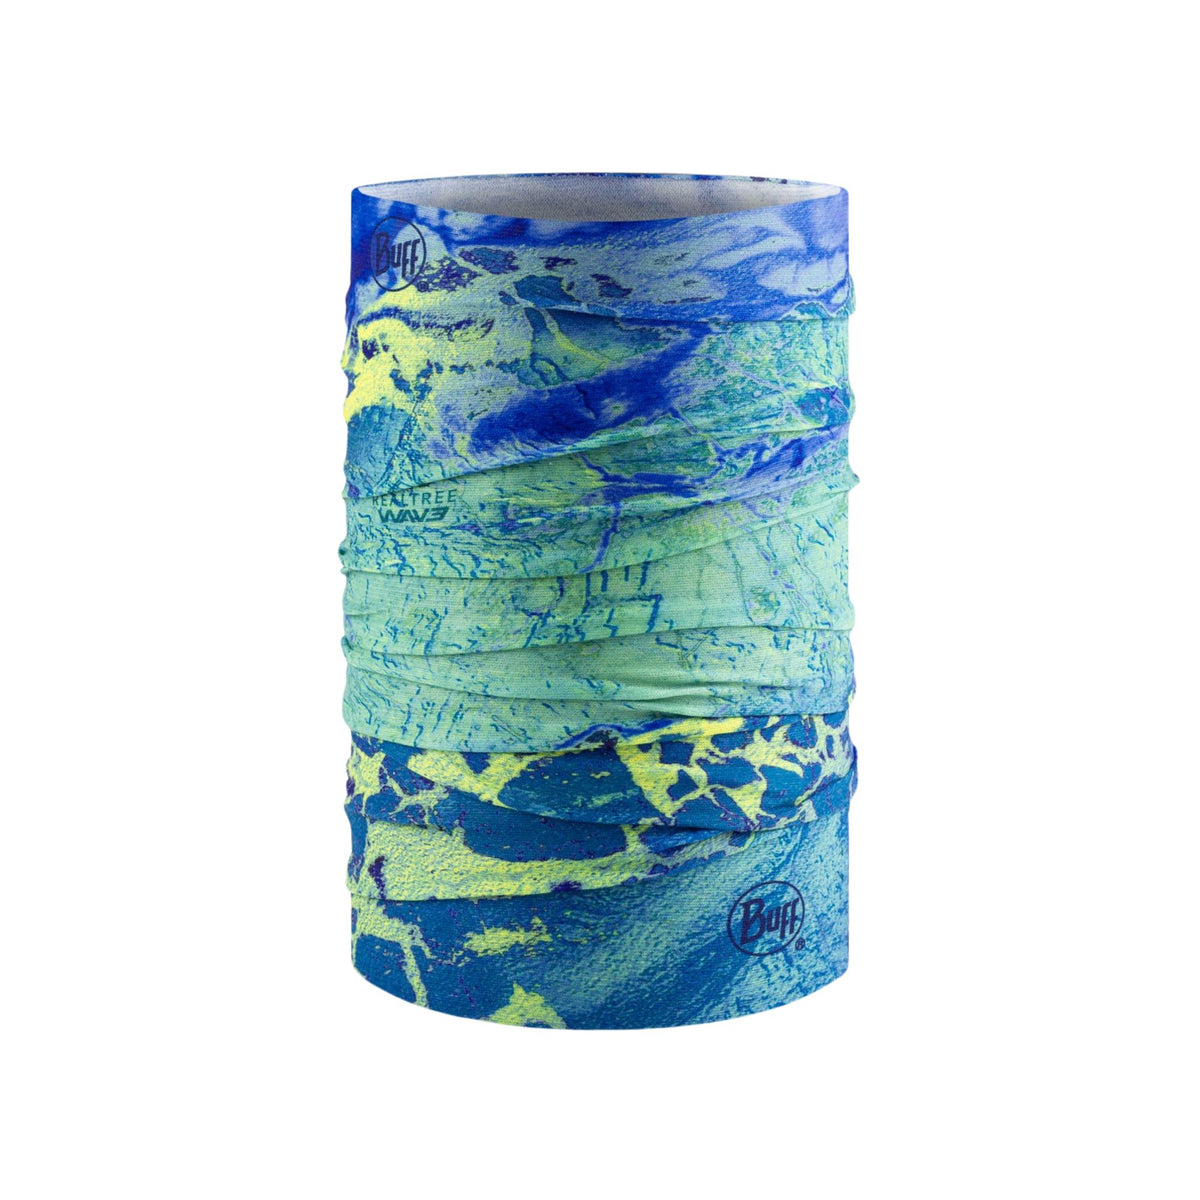 BUFF | COOLNET UV NECKWEAR - REALTREE WAV3 BLUE YELLOW - Scaldacollo con protezione solare